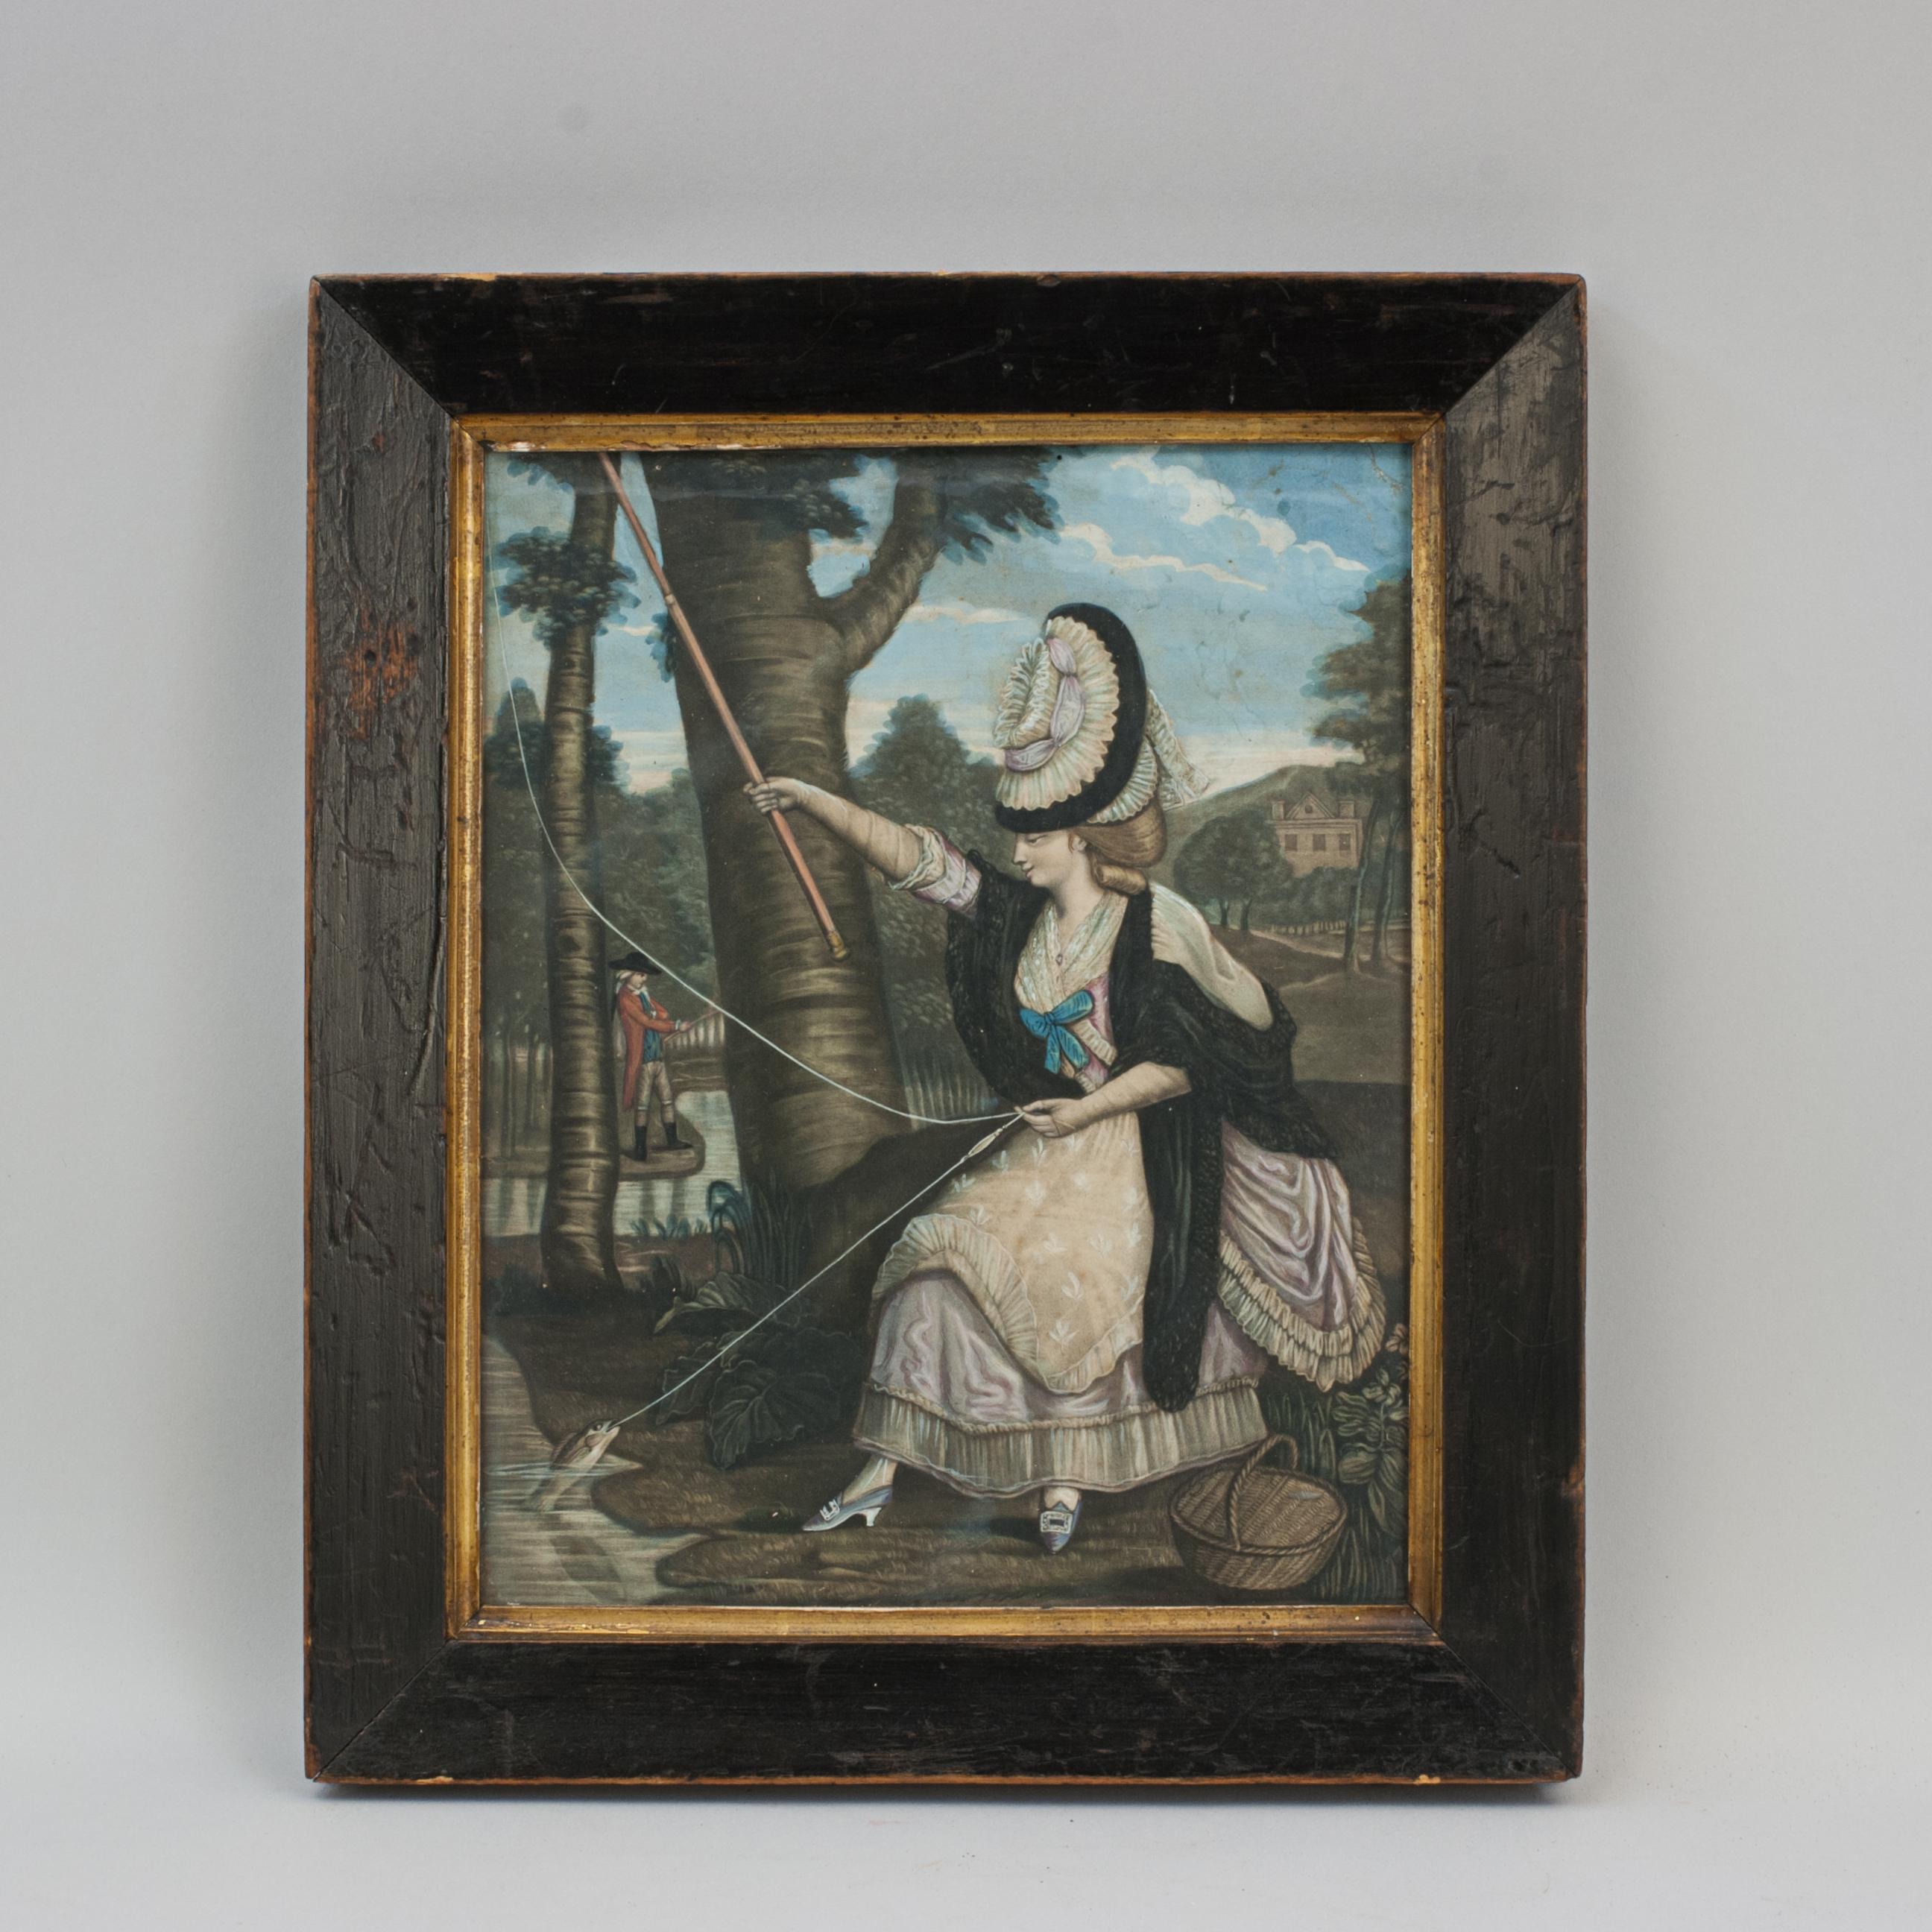 Photo de pêche du début du 18e siècle, Dame pêchant à la mouche
Un rare tableau de pêche à la mouche du XVIIIe siècle, rendu encore plus rare par le fait qu'il s'agit d'une pêcheuse. Elle a attrapé un poisson et le tire vers la berge. Une nasse en